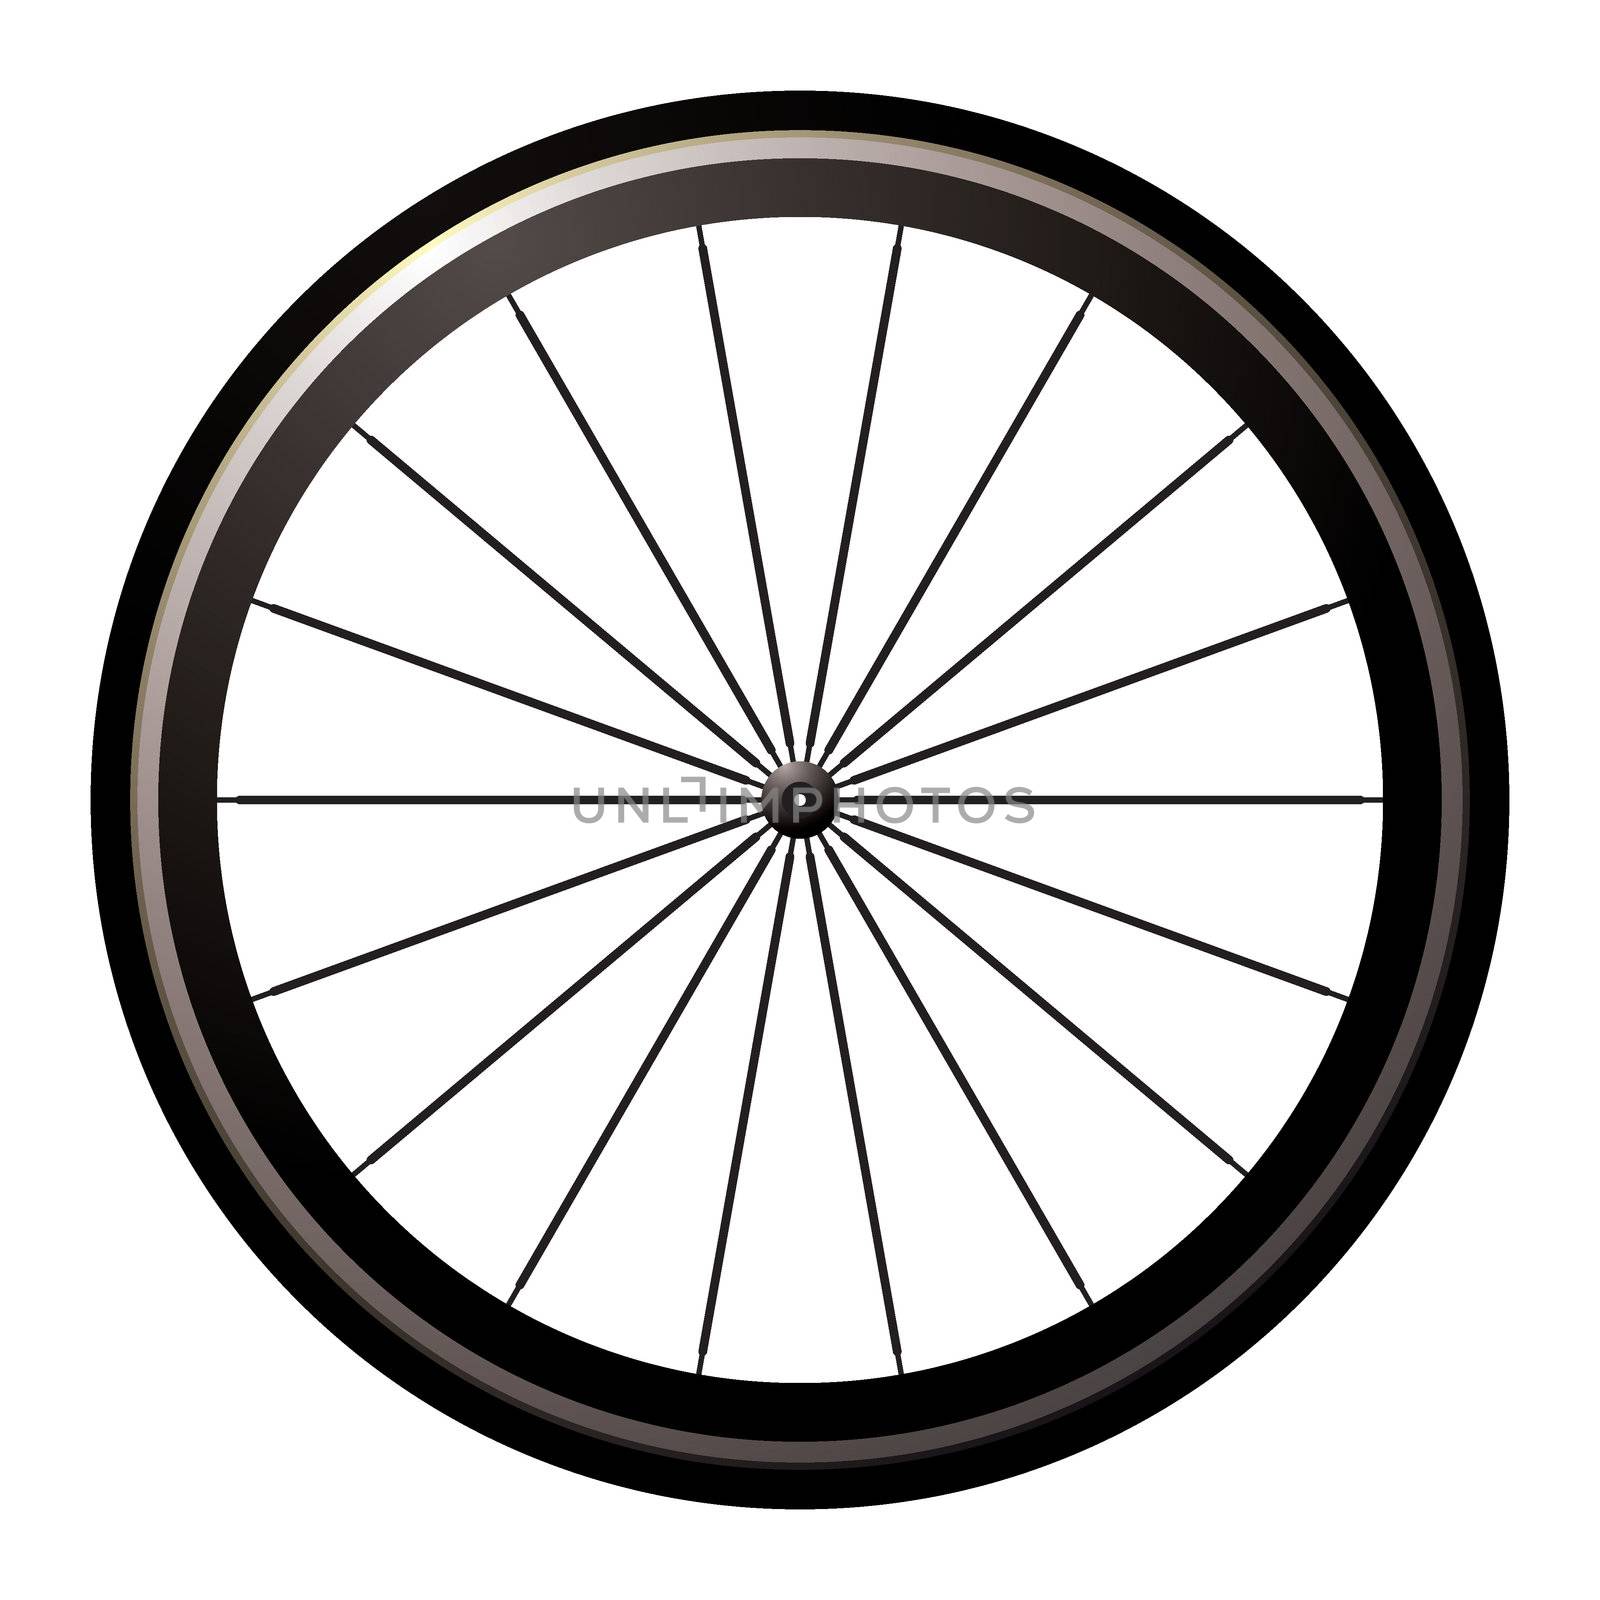 Bike road wheel by nicemonkey